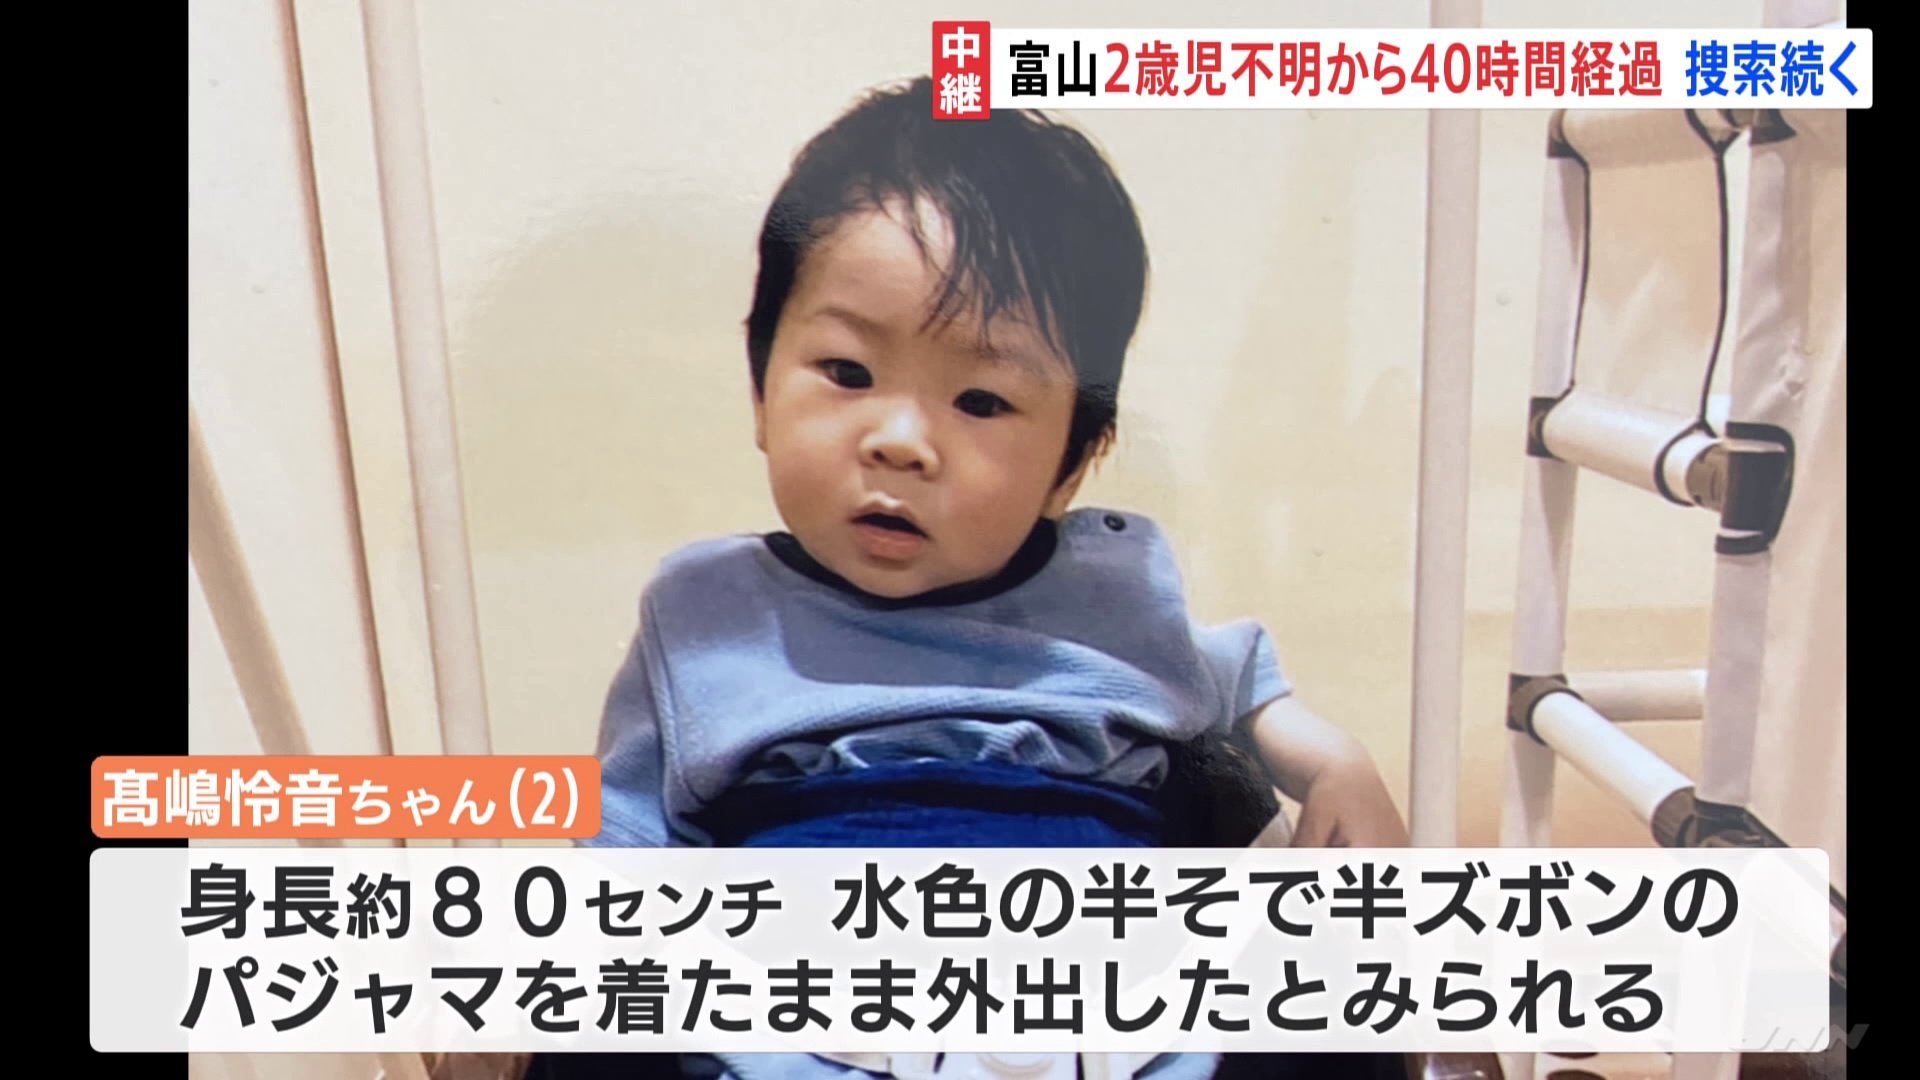 早く見つかってほしい…」富山・高岡市の2歳児行方不明 40時間以上経過、懸命の捜索活動続く | TBS NEWS DIG